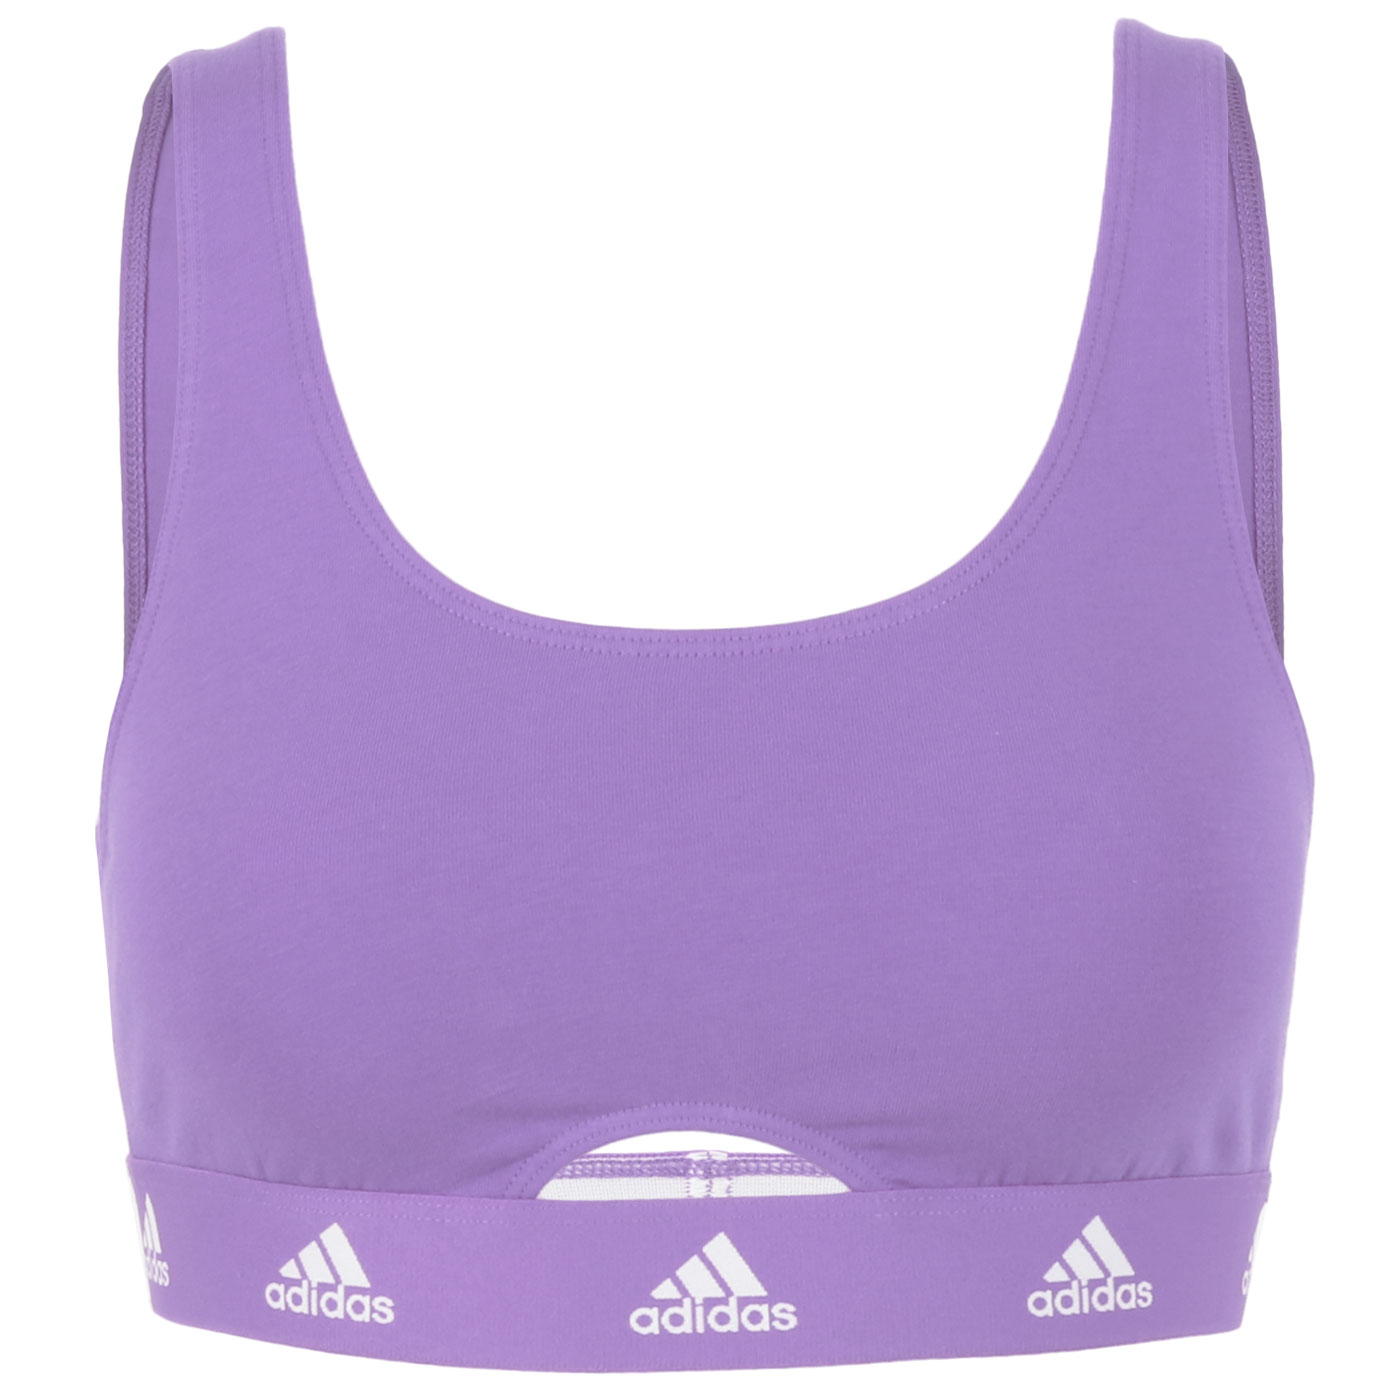 Image of adidas Sports Underwear Scoop Bralette Women - 820-violet